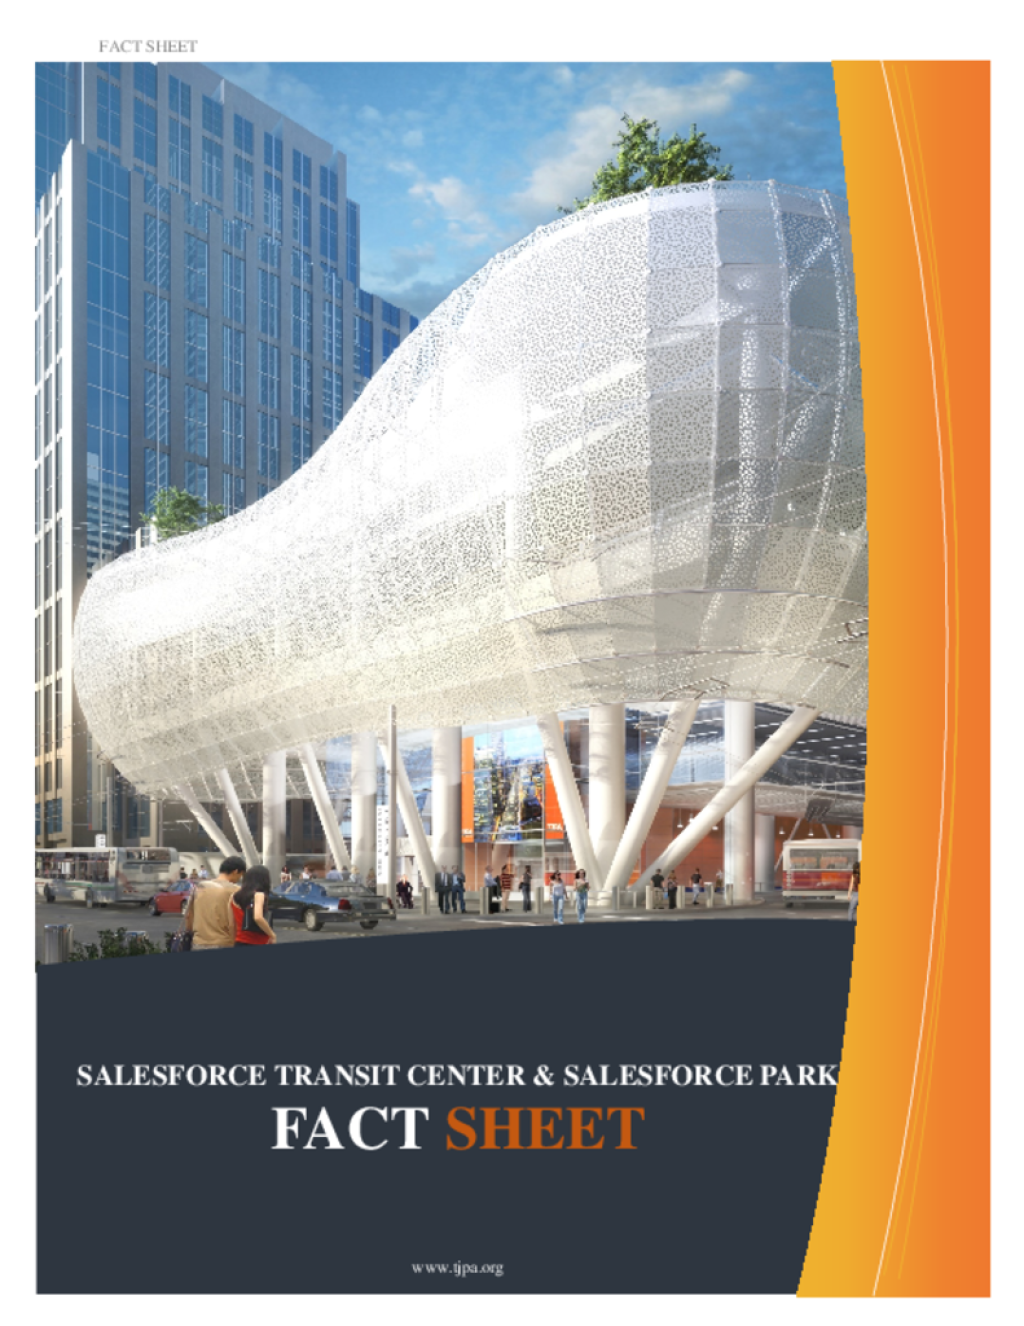 165-Fact-Sheet-Salesforce-Transit-Center